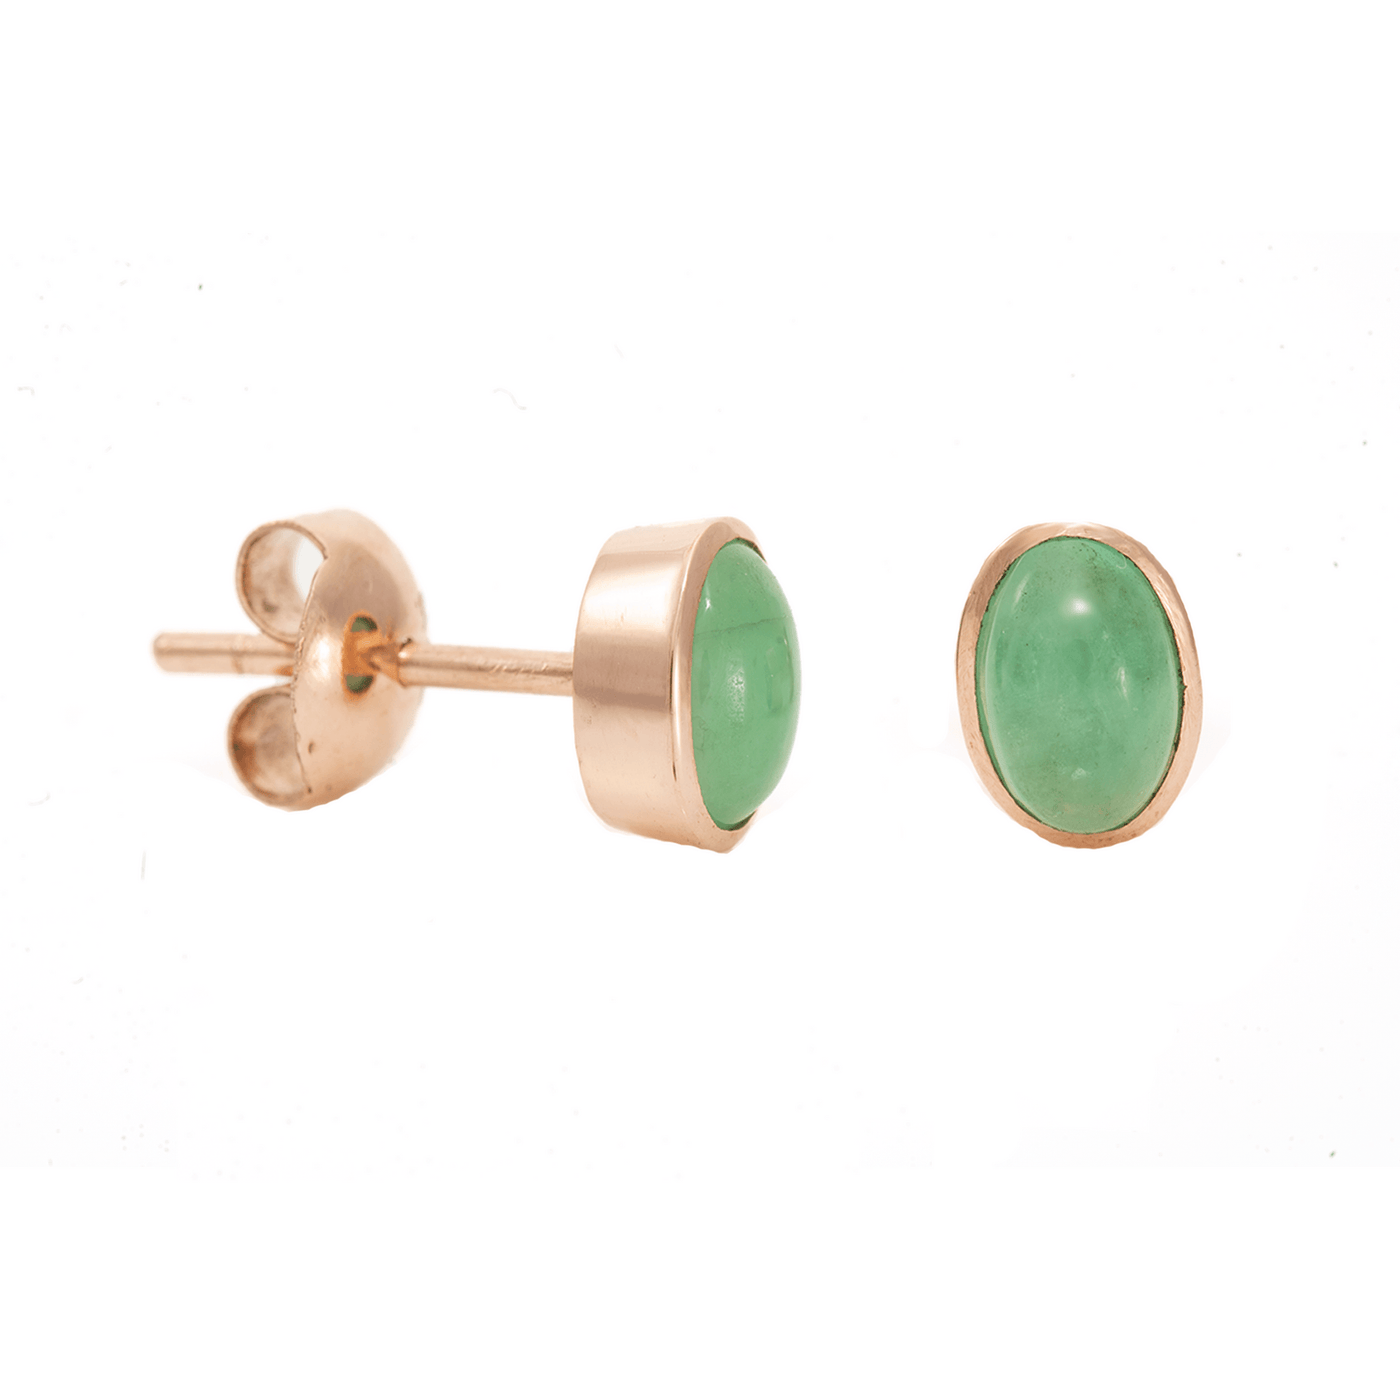 Simon Alexander 9ct Yellow Gold Emerald Stud Earrings - Rococo Jewellery